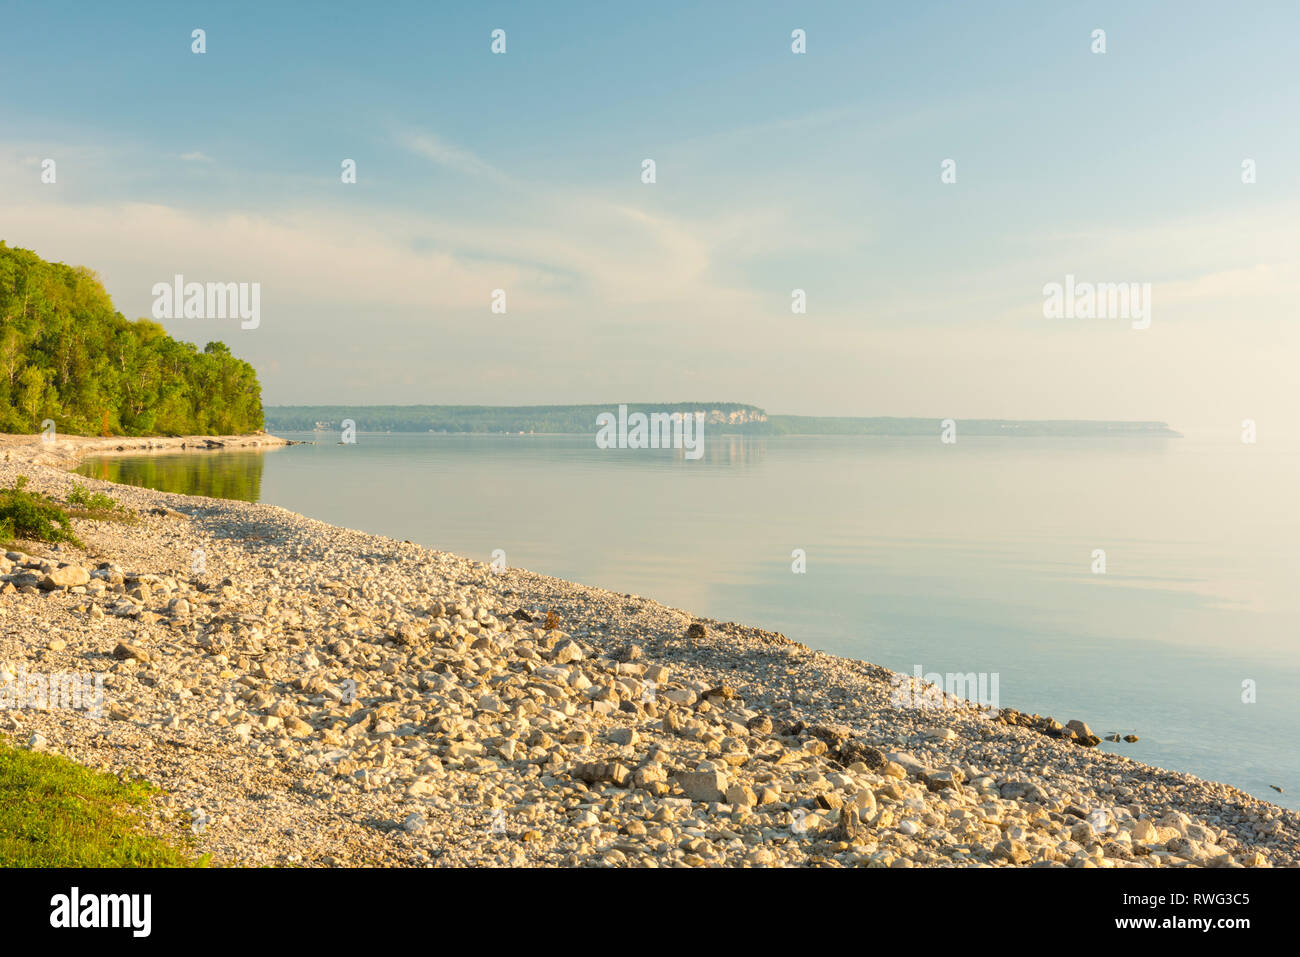 Spiaggia di ciottoli, affacciato su una tranquilla baia georgiana, la mattina presto in estate, testa di leone, Ontario, Canada Foto Stock